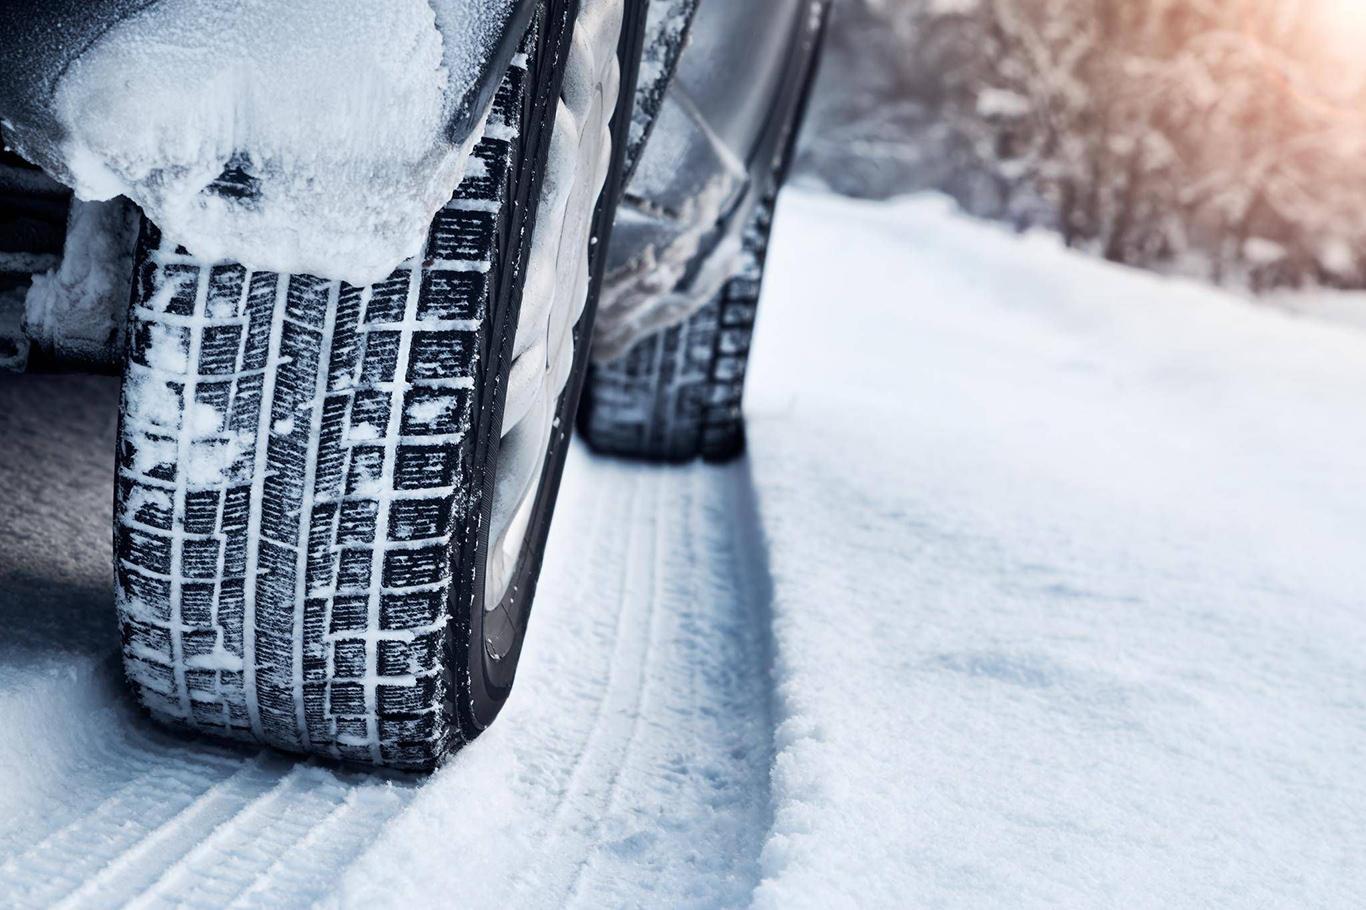 Ticari araçların kış lastiği takma zorunluluğu 1 Aralık'ta başlıyor